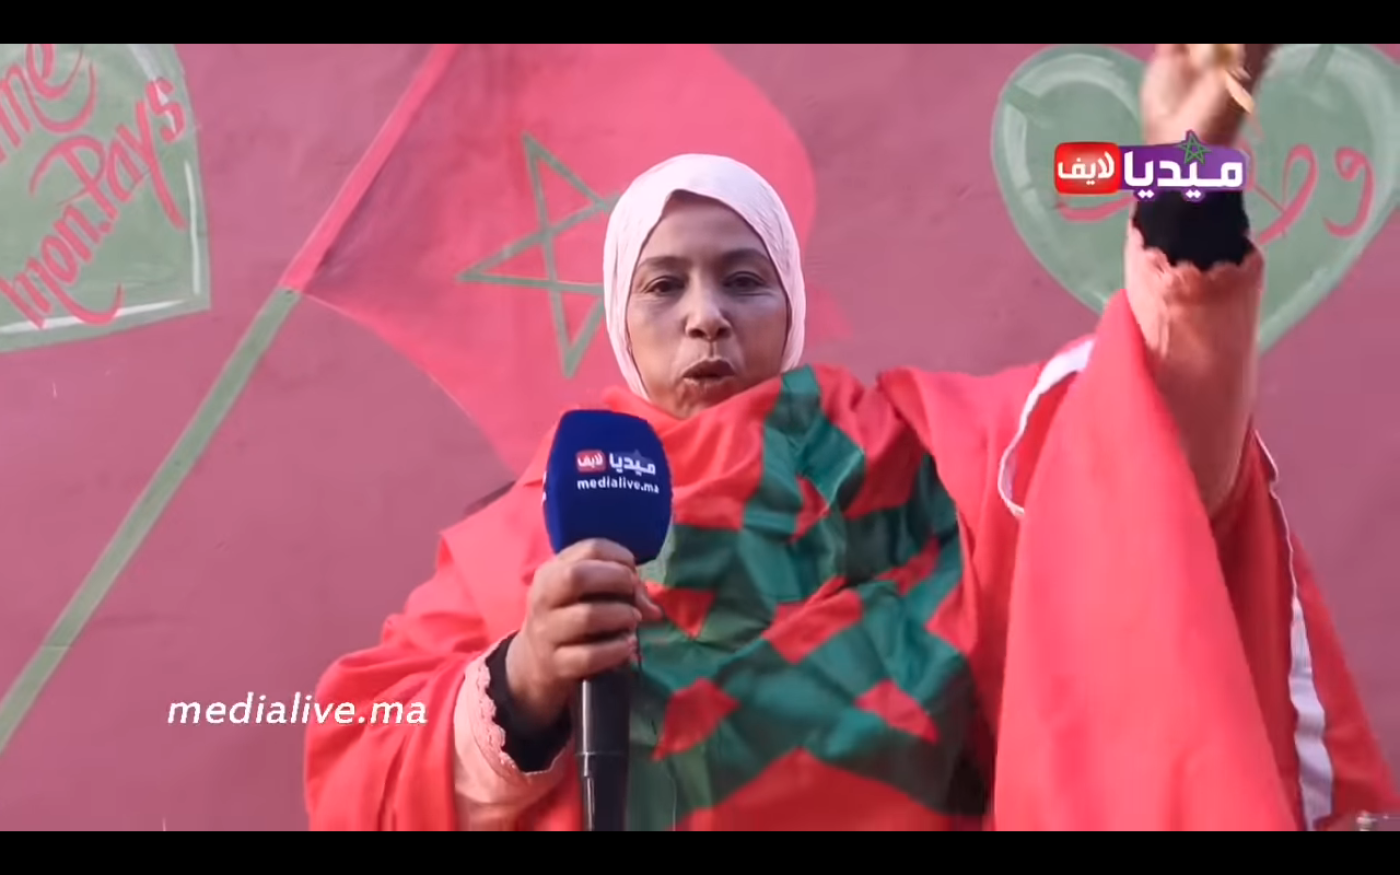 Une Marocaine réagit sur une chaîne nationale à l’émission satirique diffusée en Algérie (capture d’écran/medialive.ma)